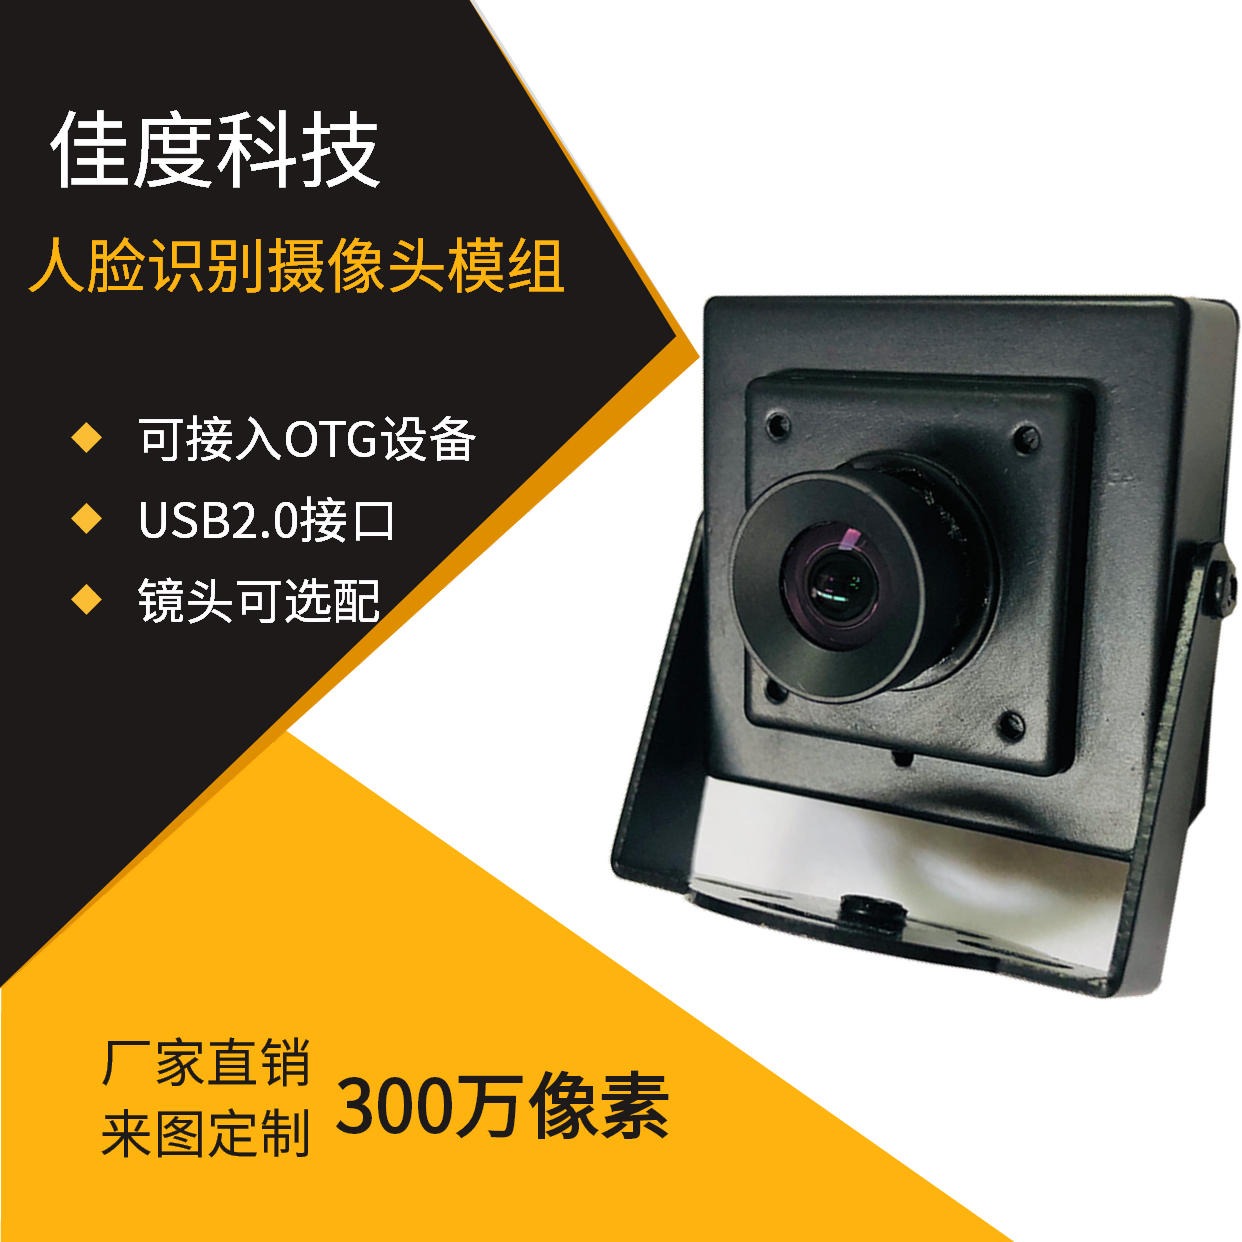 OTG摄像头模组 佳度厂家生产300W人脸识别OTG摄像头模组 可订做